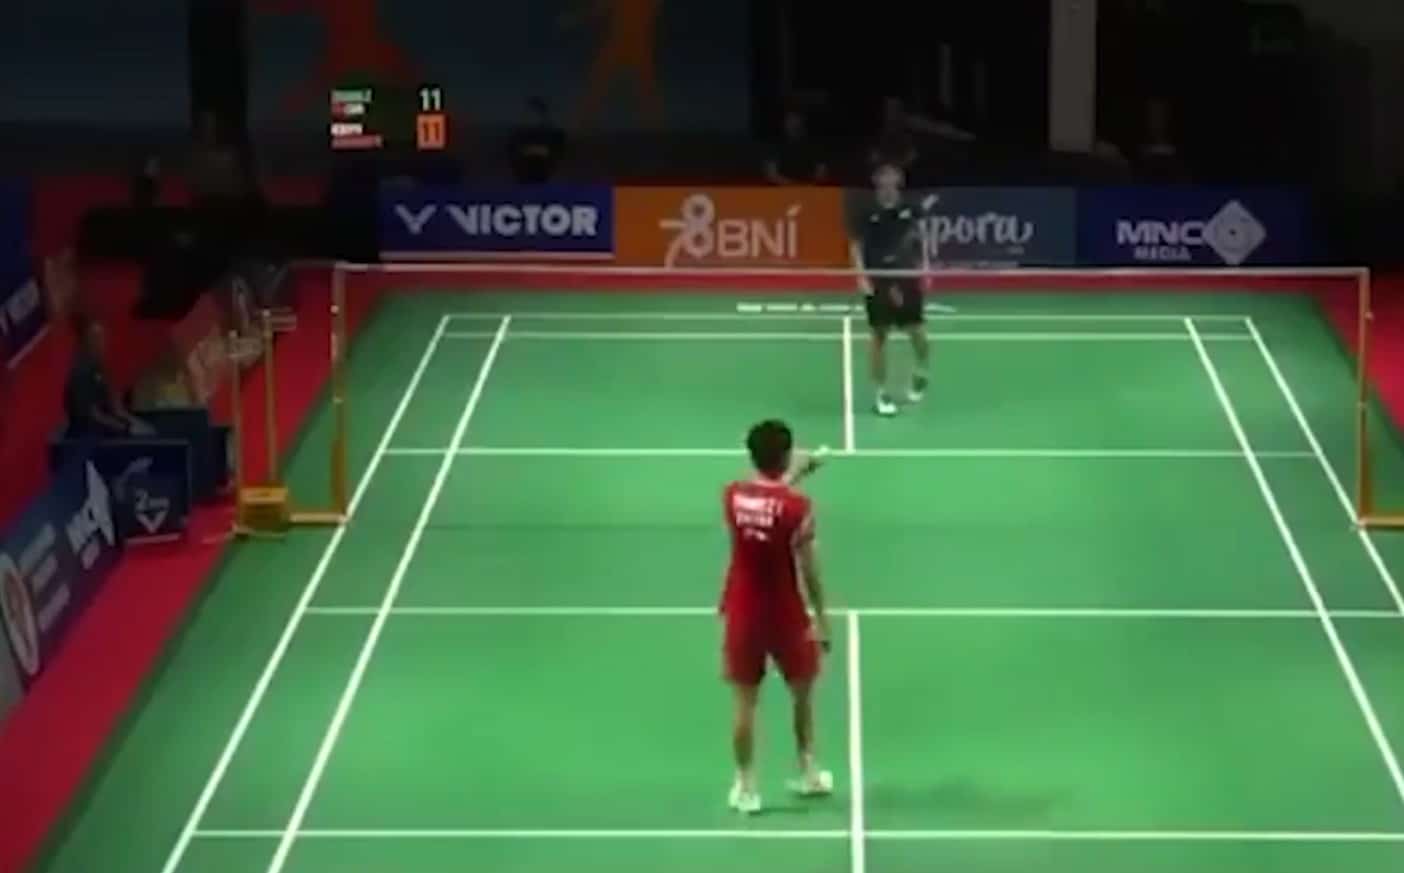 Cenas Fortes: jovem jogador chinês de badminton tem mal súbito durante partida e morre; VEJA VÍDEO